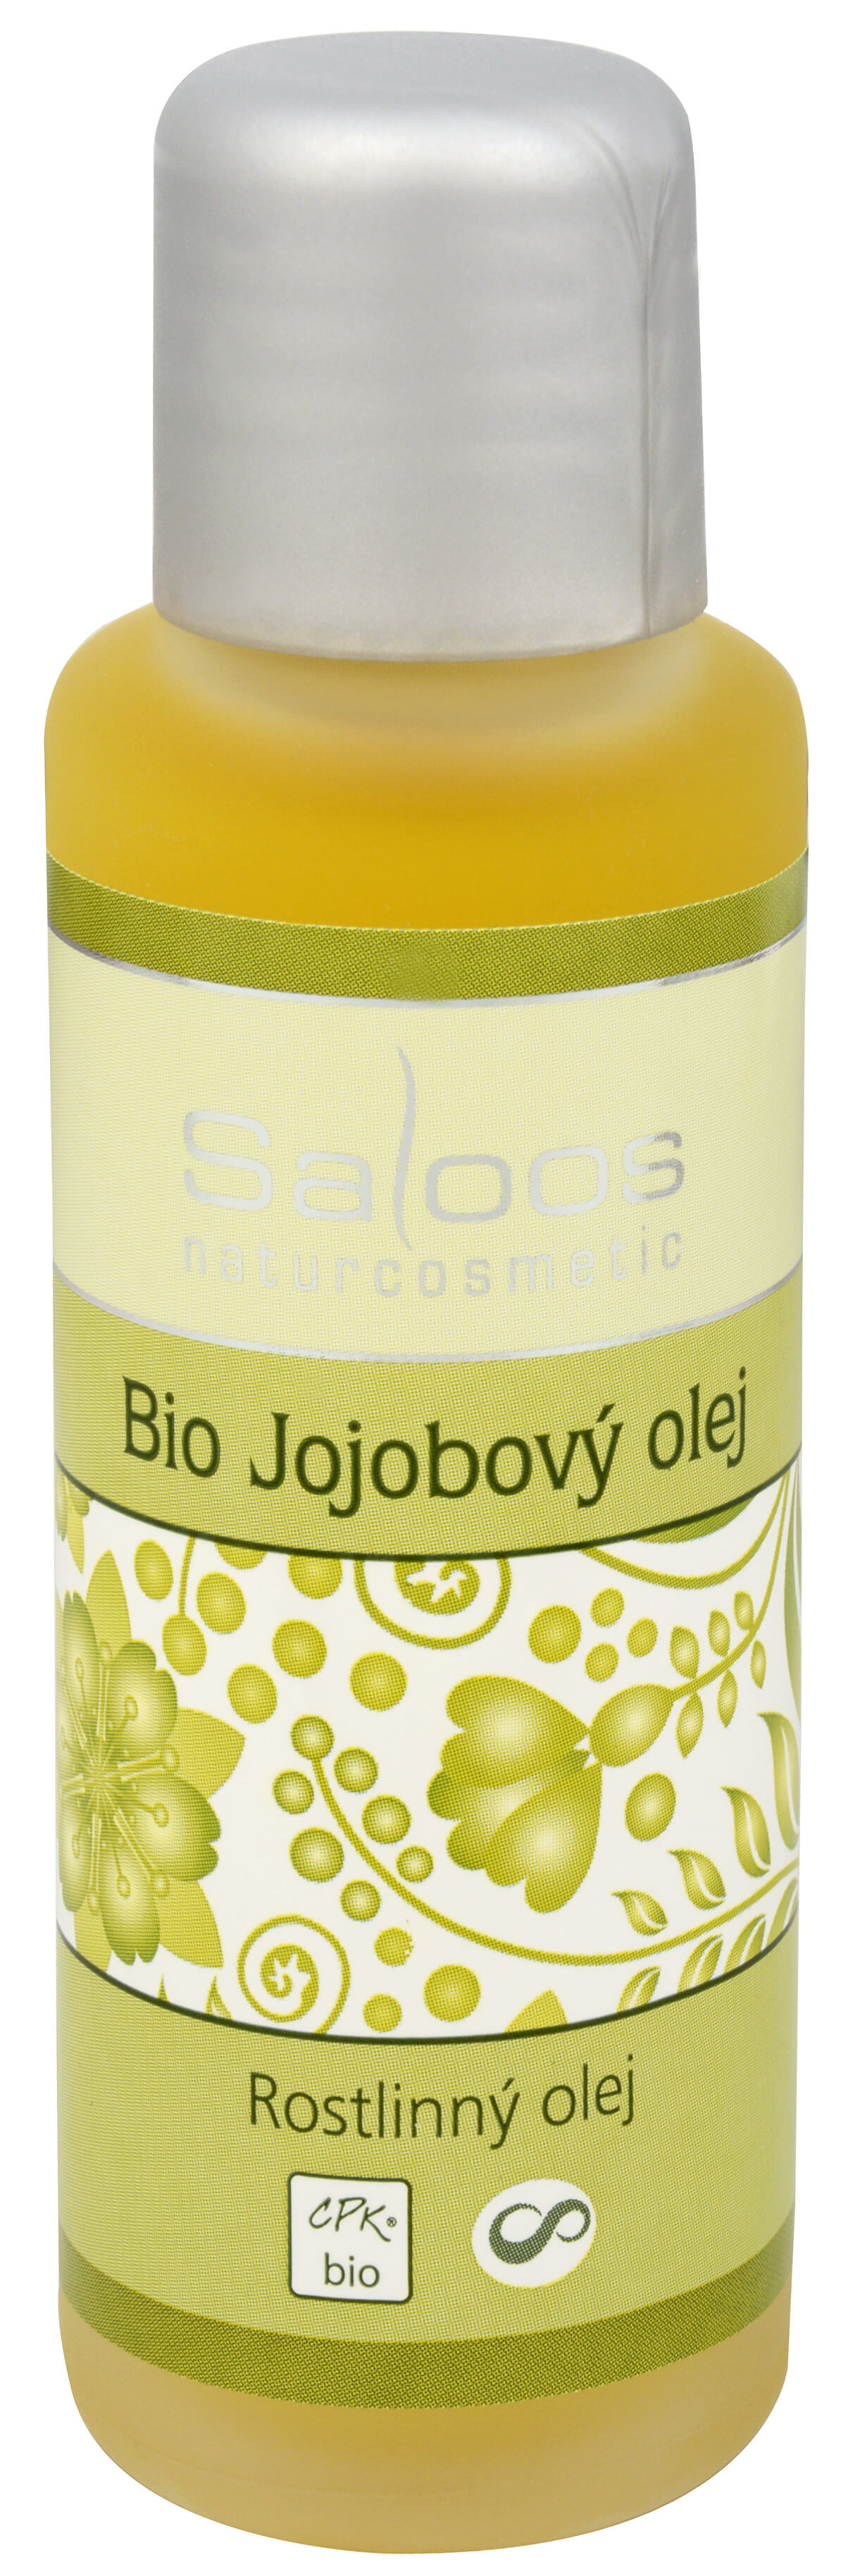 Zobrazit detail výrobku Saloos Bio Jojobový olej lisovaný za studena 50 ml